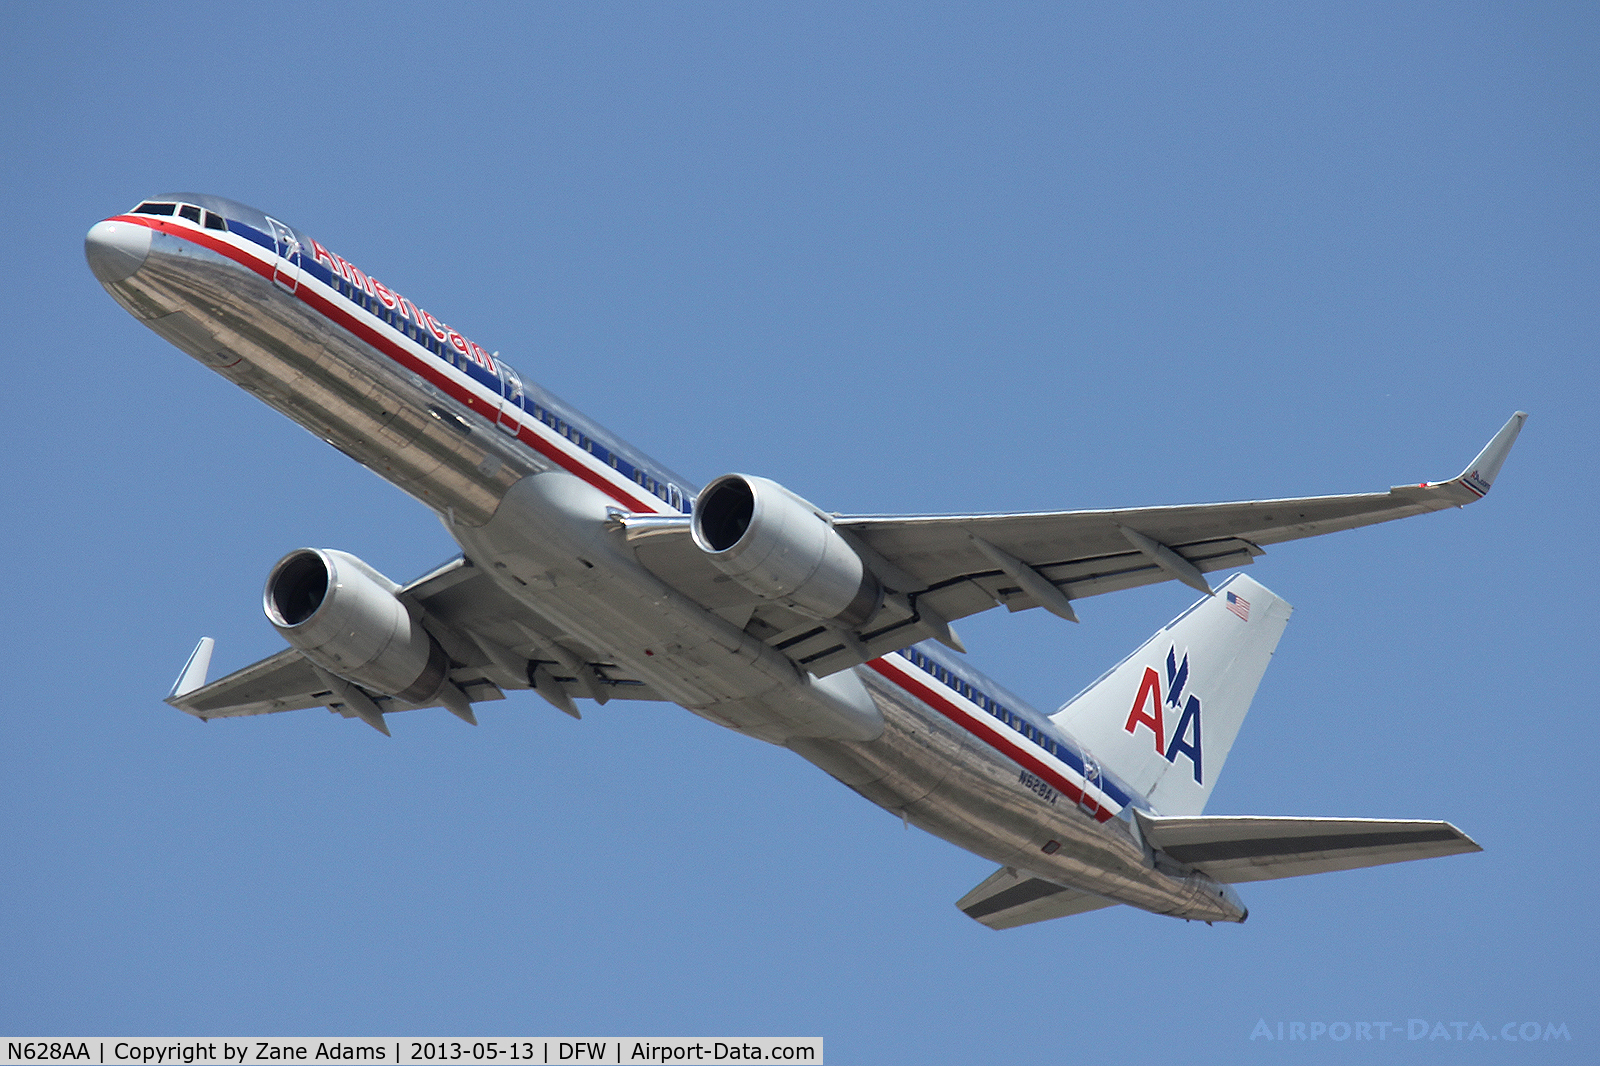 N628AA, 1990 Boeing 757-223 C/N 24586, American Airlines at DFW Airport